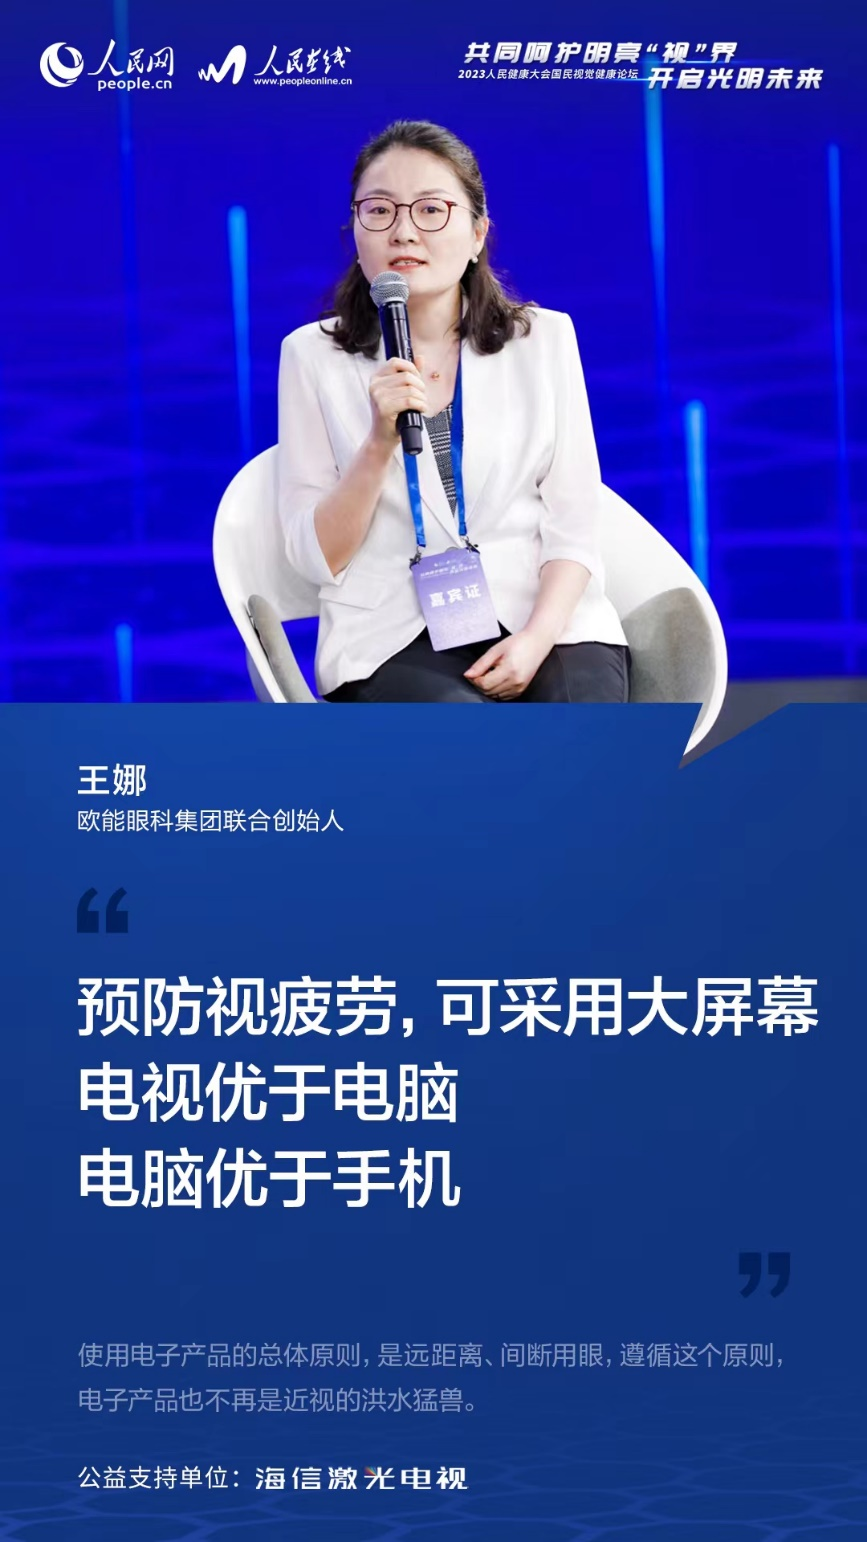 健康大屏專家首選激光電視  國民視覺健康論壇在京召開